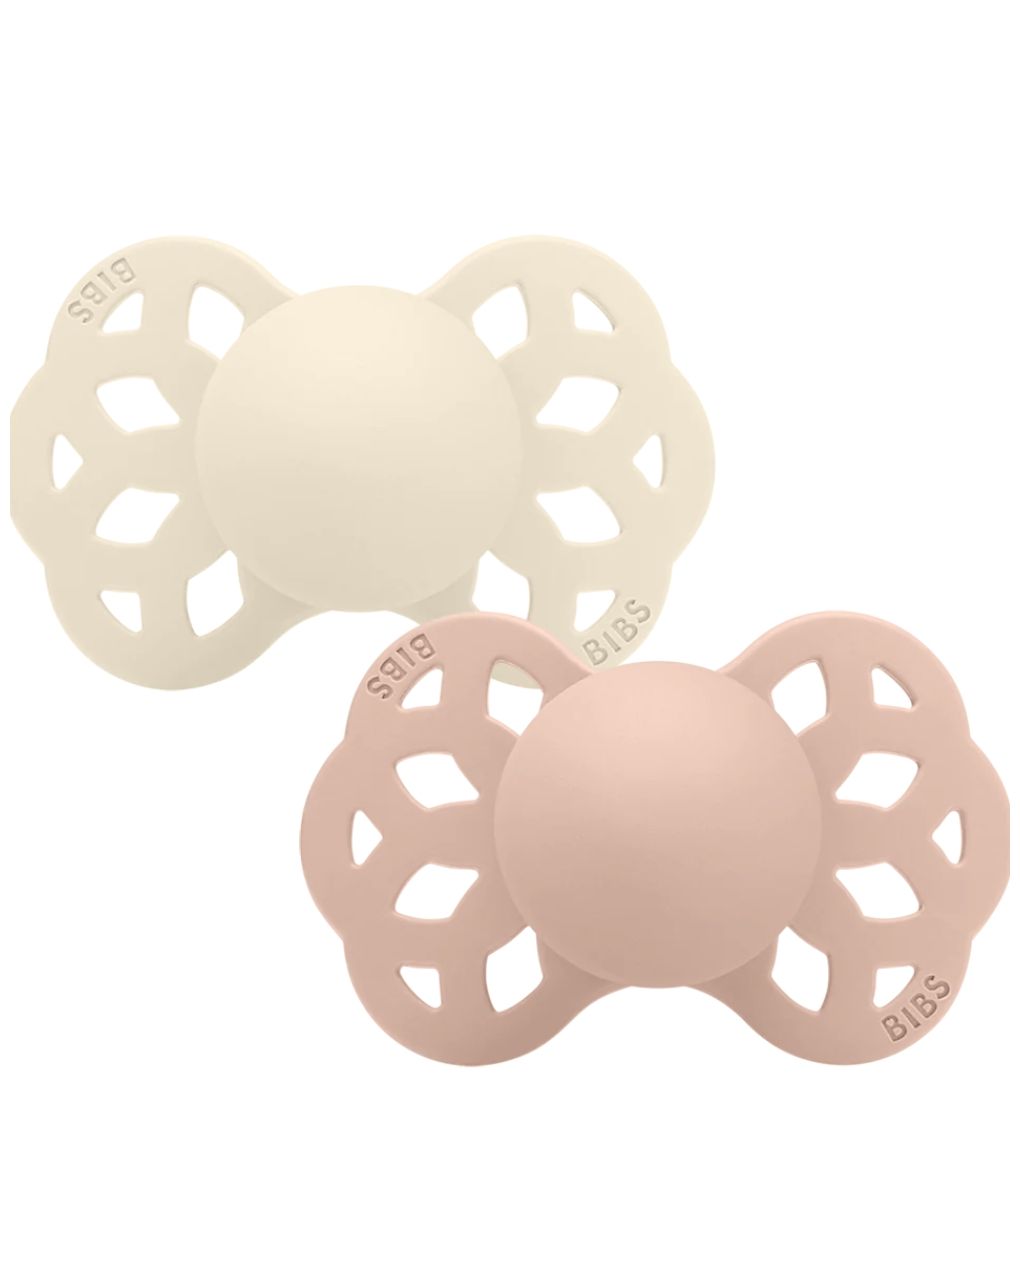 Set 2 ciucci tettarella simmetrica in silicone 0/6 mesi - colore avorio/rosa cipria - bibs